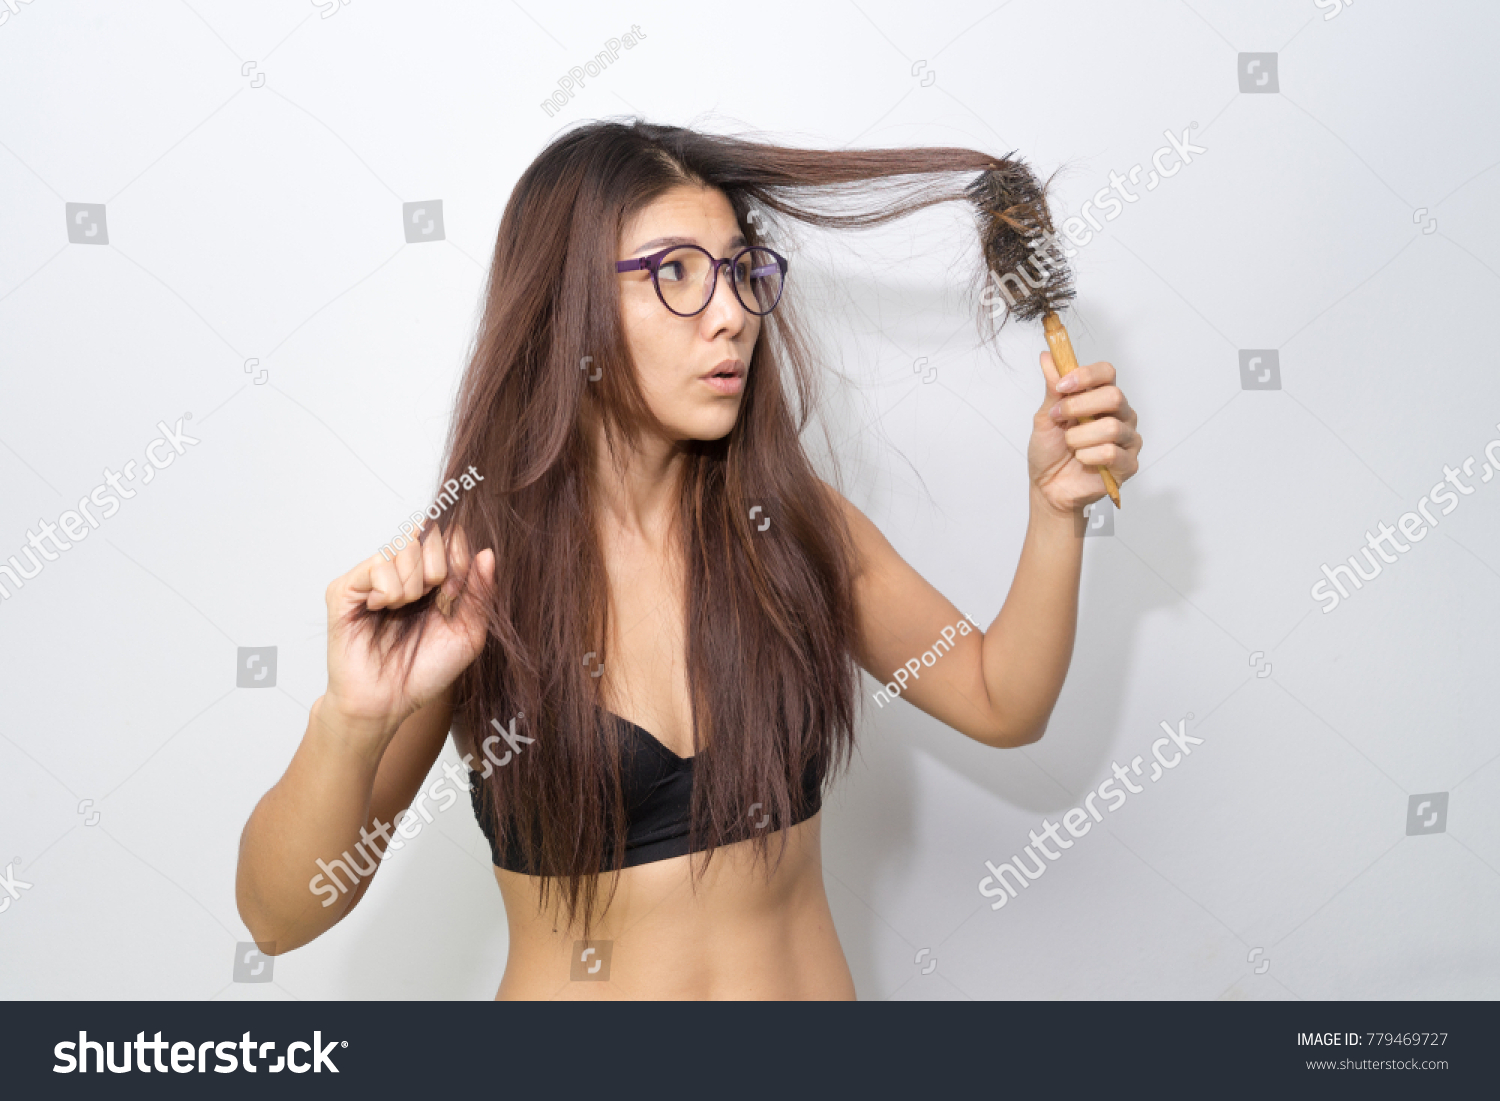 Girl Feeling Nervous Hair Loss On Stock Photo 779469727 Shutterstock